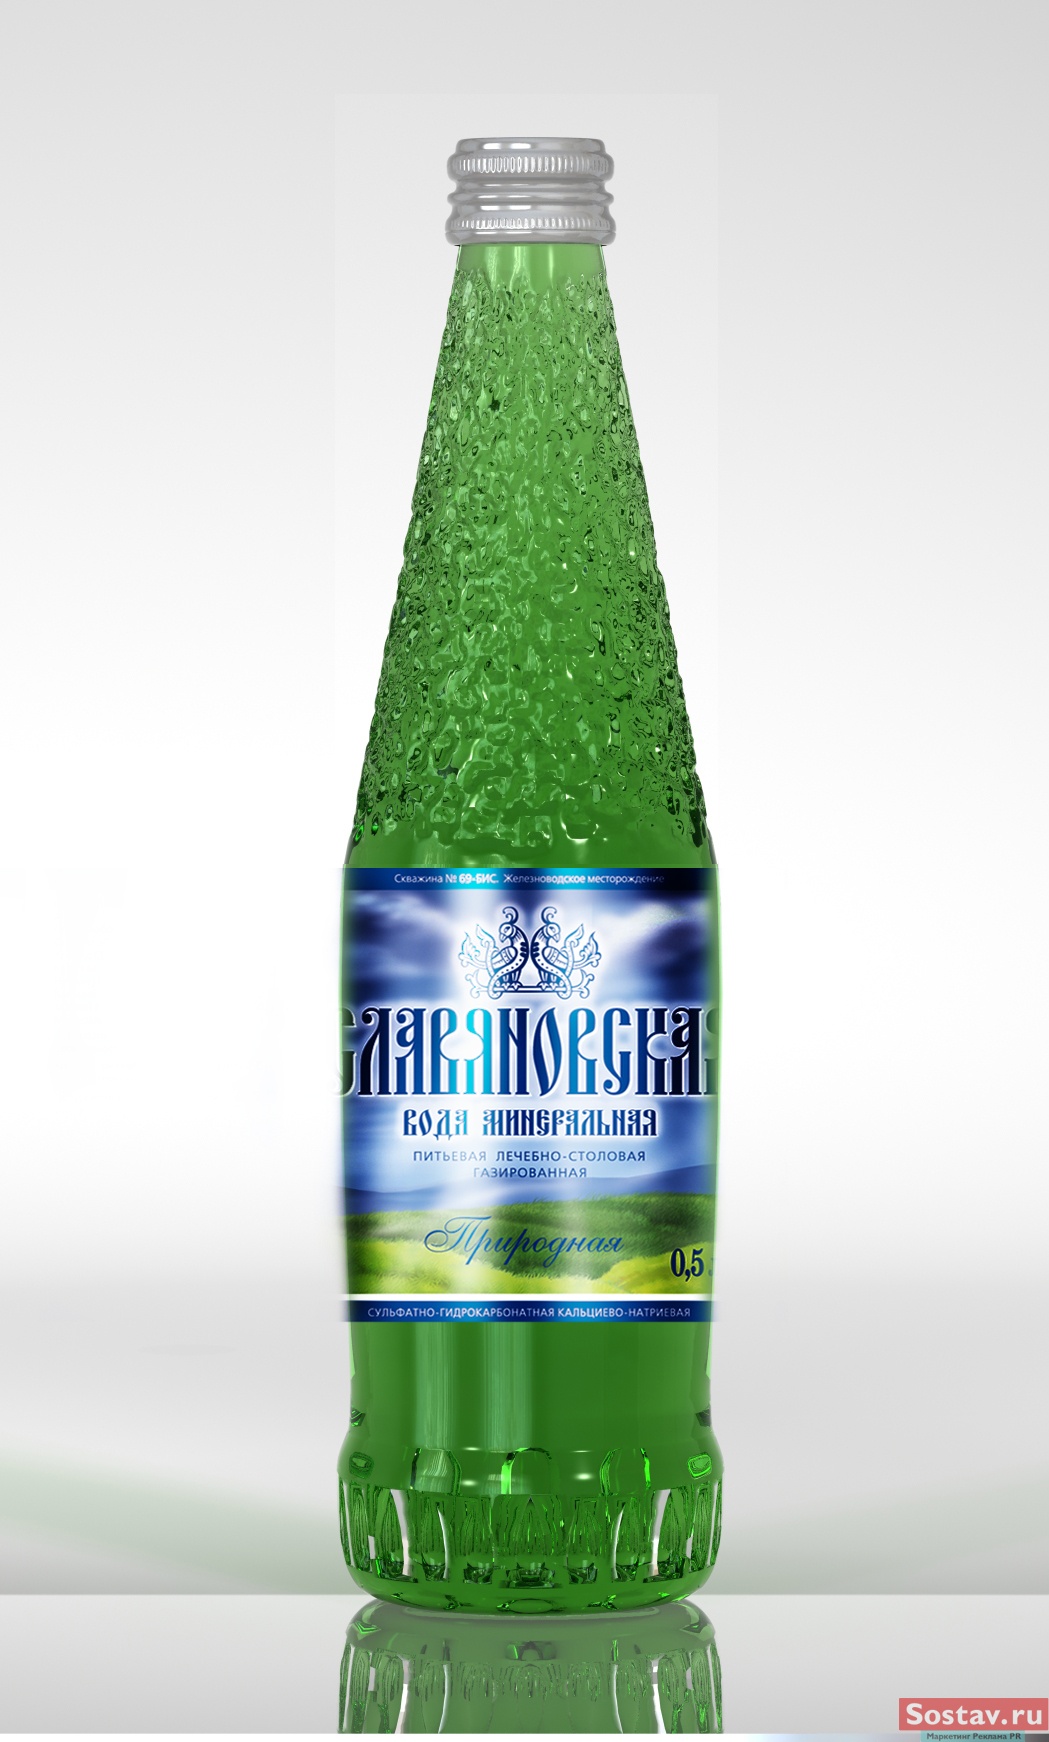 Вода в зеленой стеклянной бутылке. Минеральная вода в бутылках. Минеральная вода в стеклянных бутылках. Минеральные воды. Минеральная вода в зеленой бутылке.